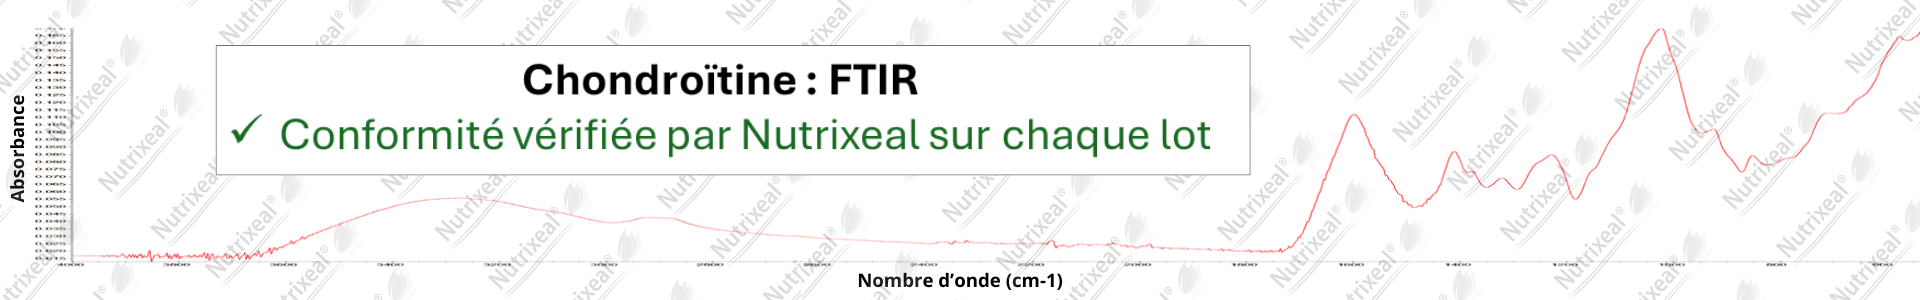 spectrométrie FTIR de la chondroïtine